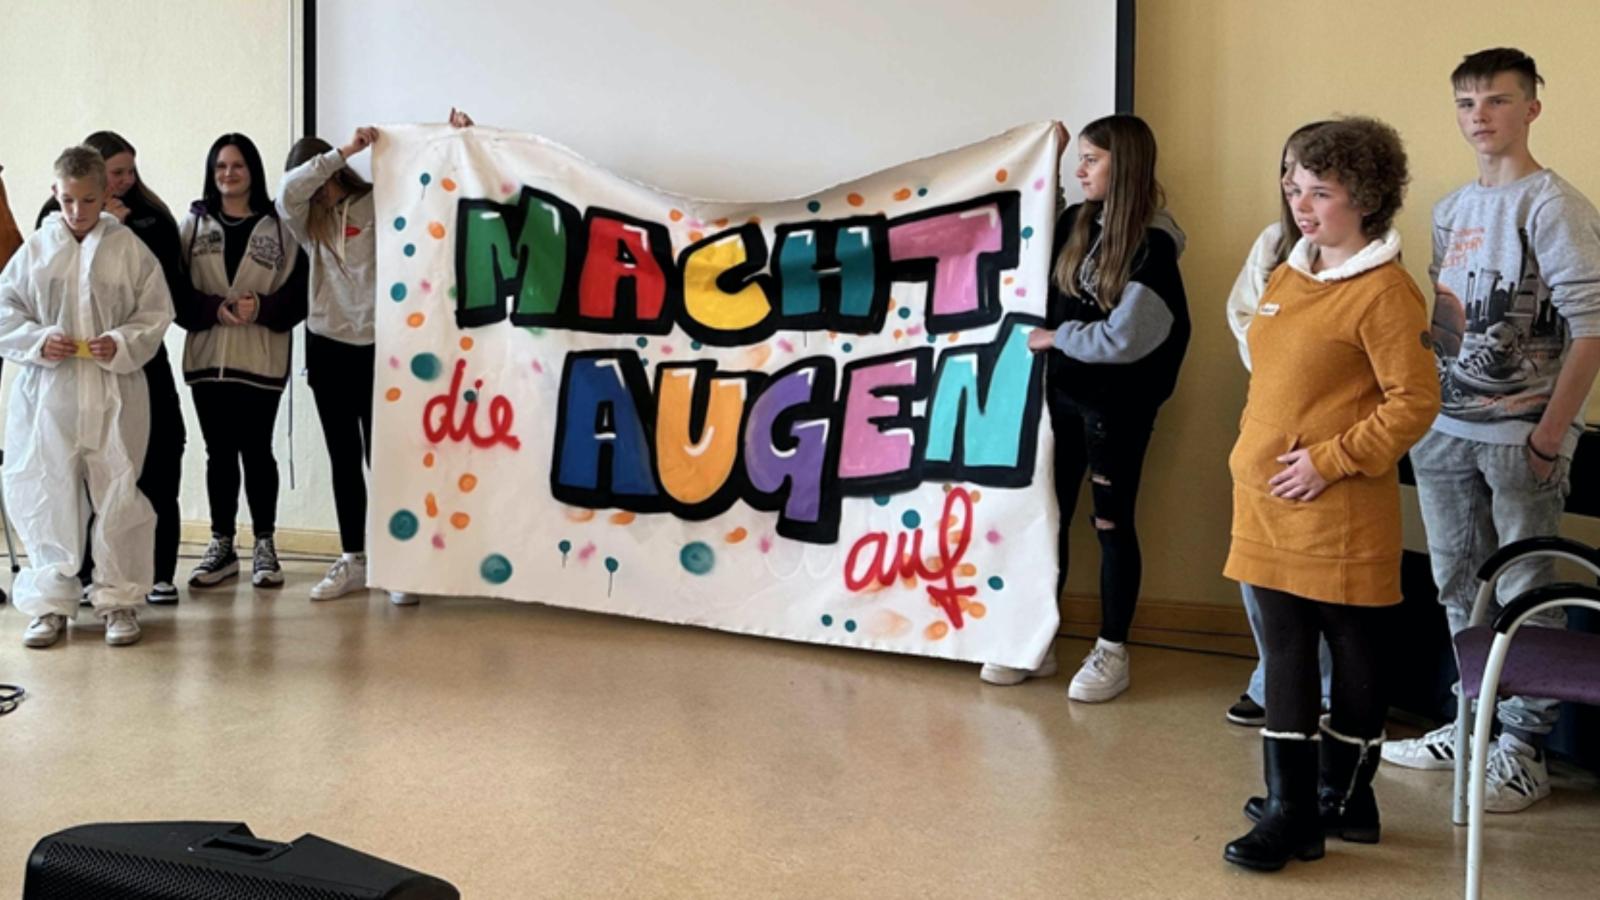 Schüler*innen von Wittenberger Schulen halten ein Plakat mit dem Motto "Macht die Augen auf"